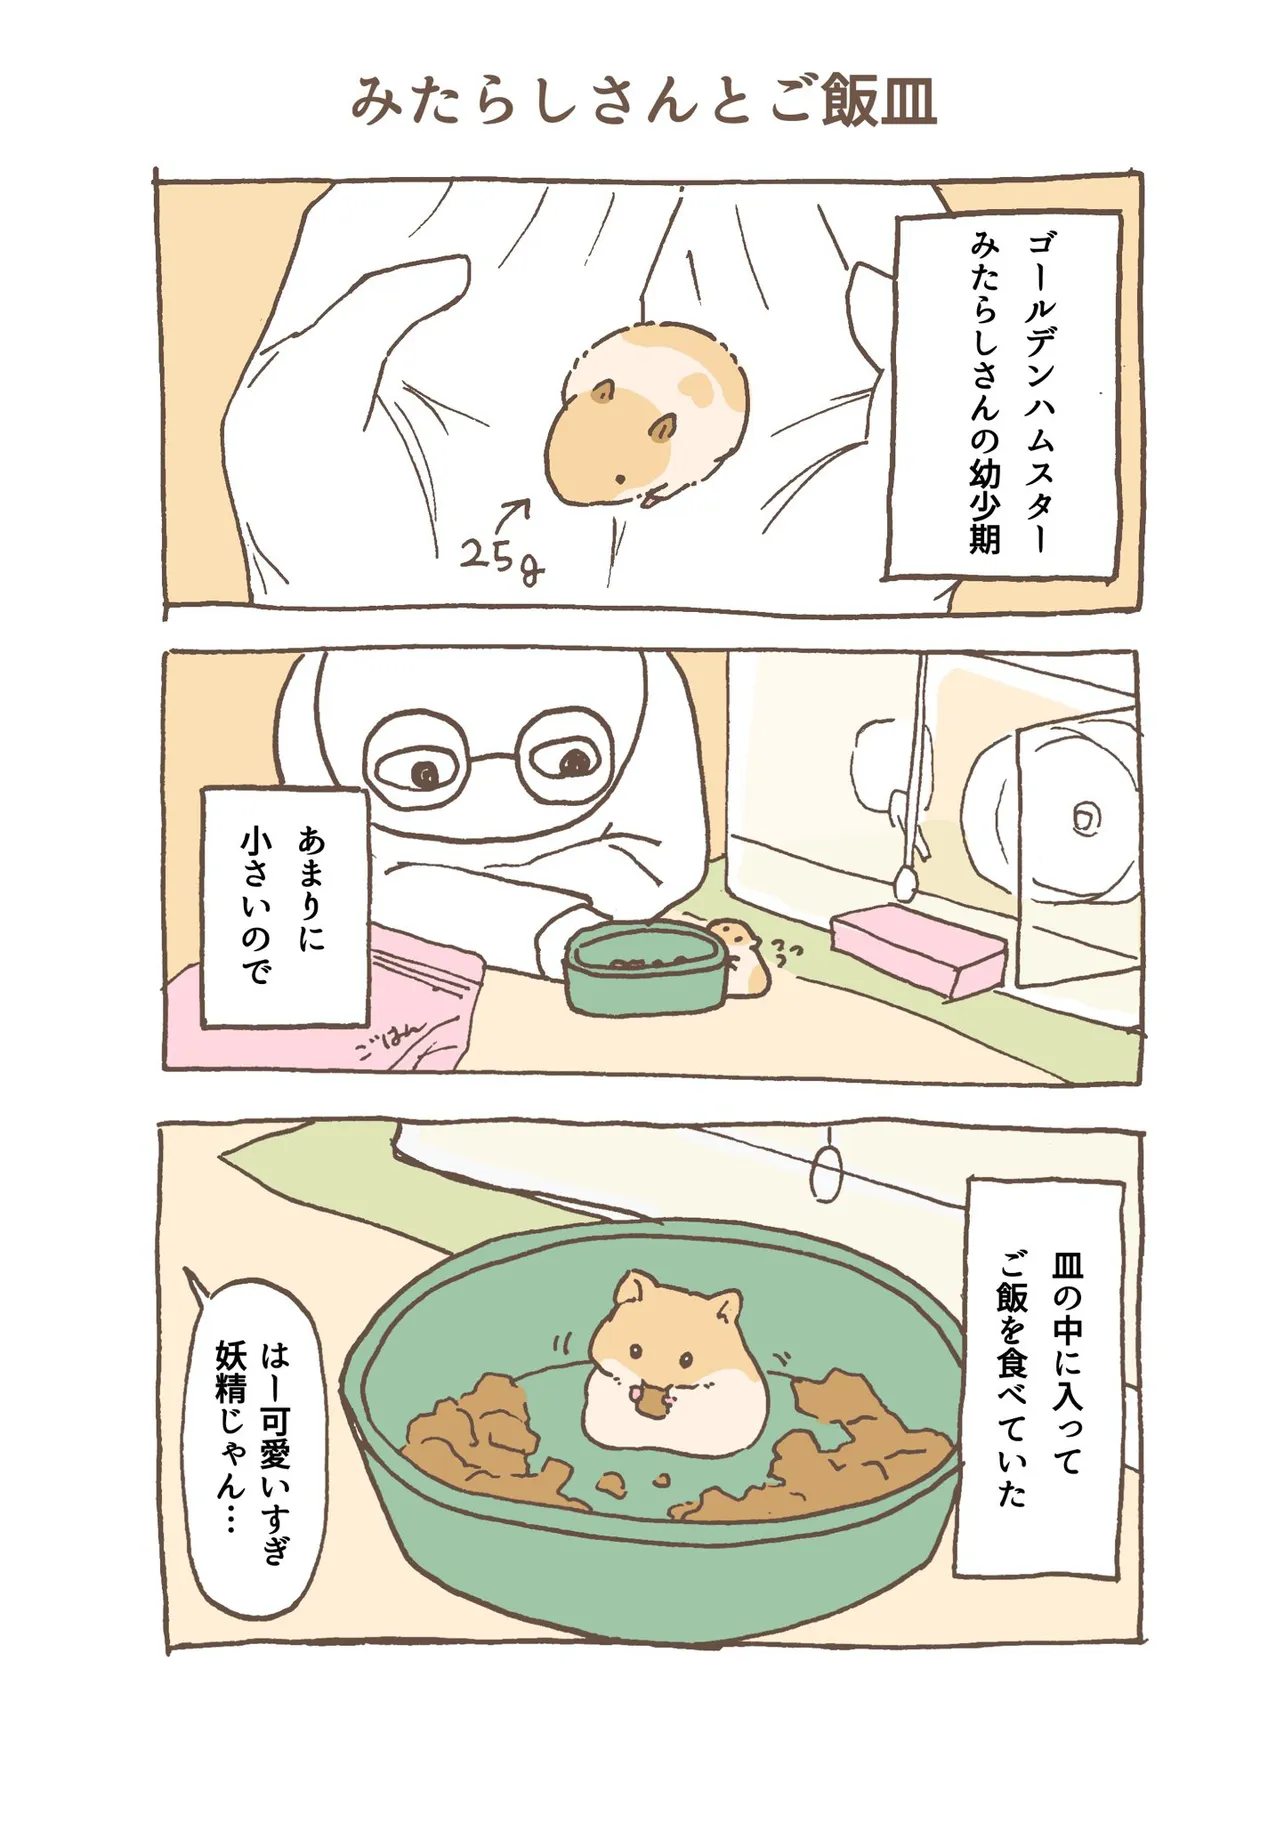 『ハムスターとご飯皿』(1)